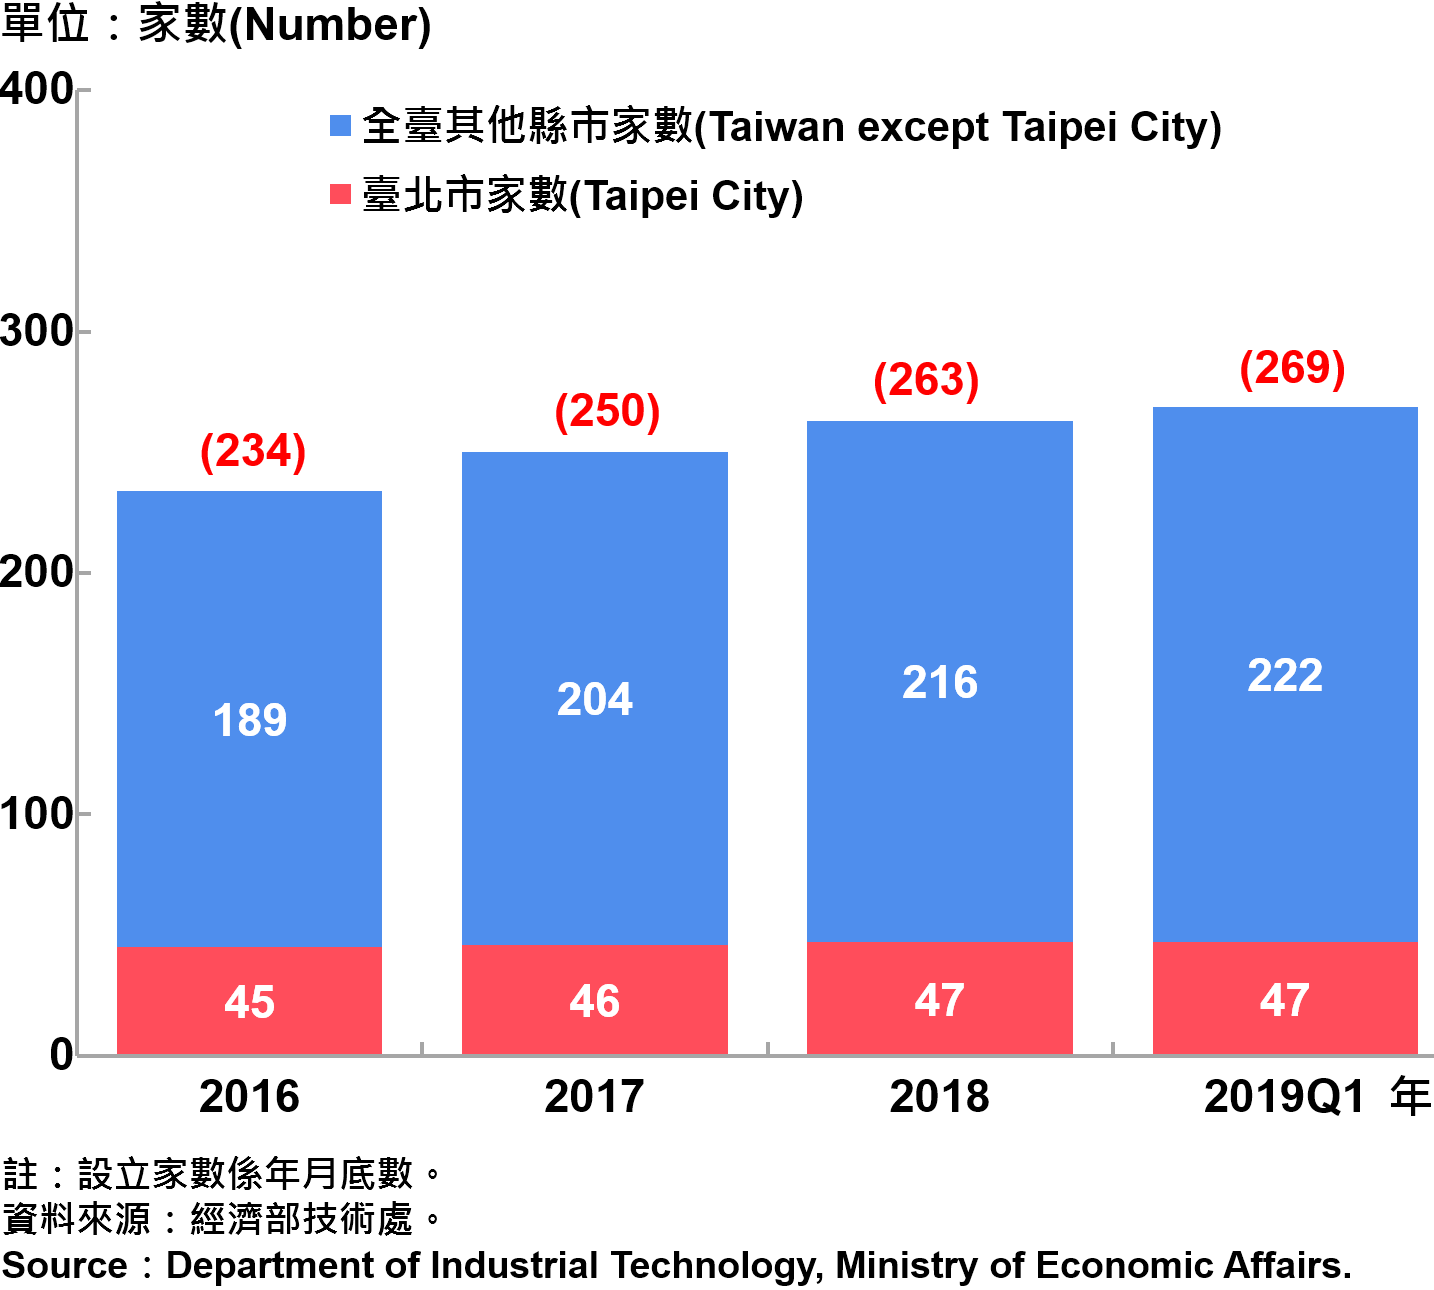 臺北市研發中心設立家數—2019Q1 Number of R&D Centers in Taipei City—2019Q1